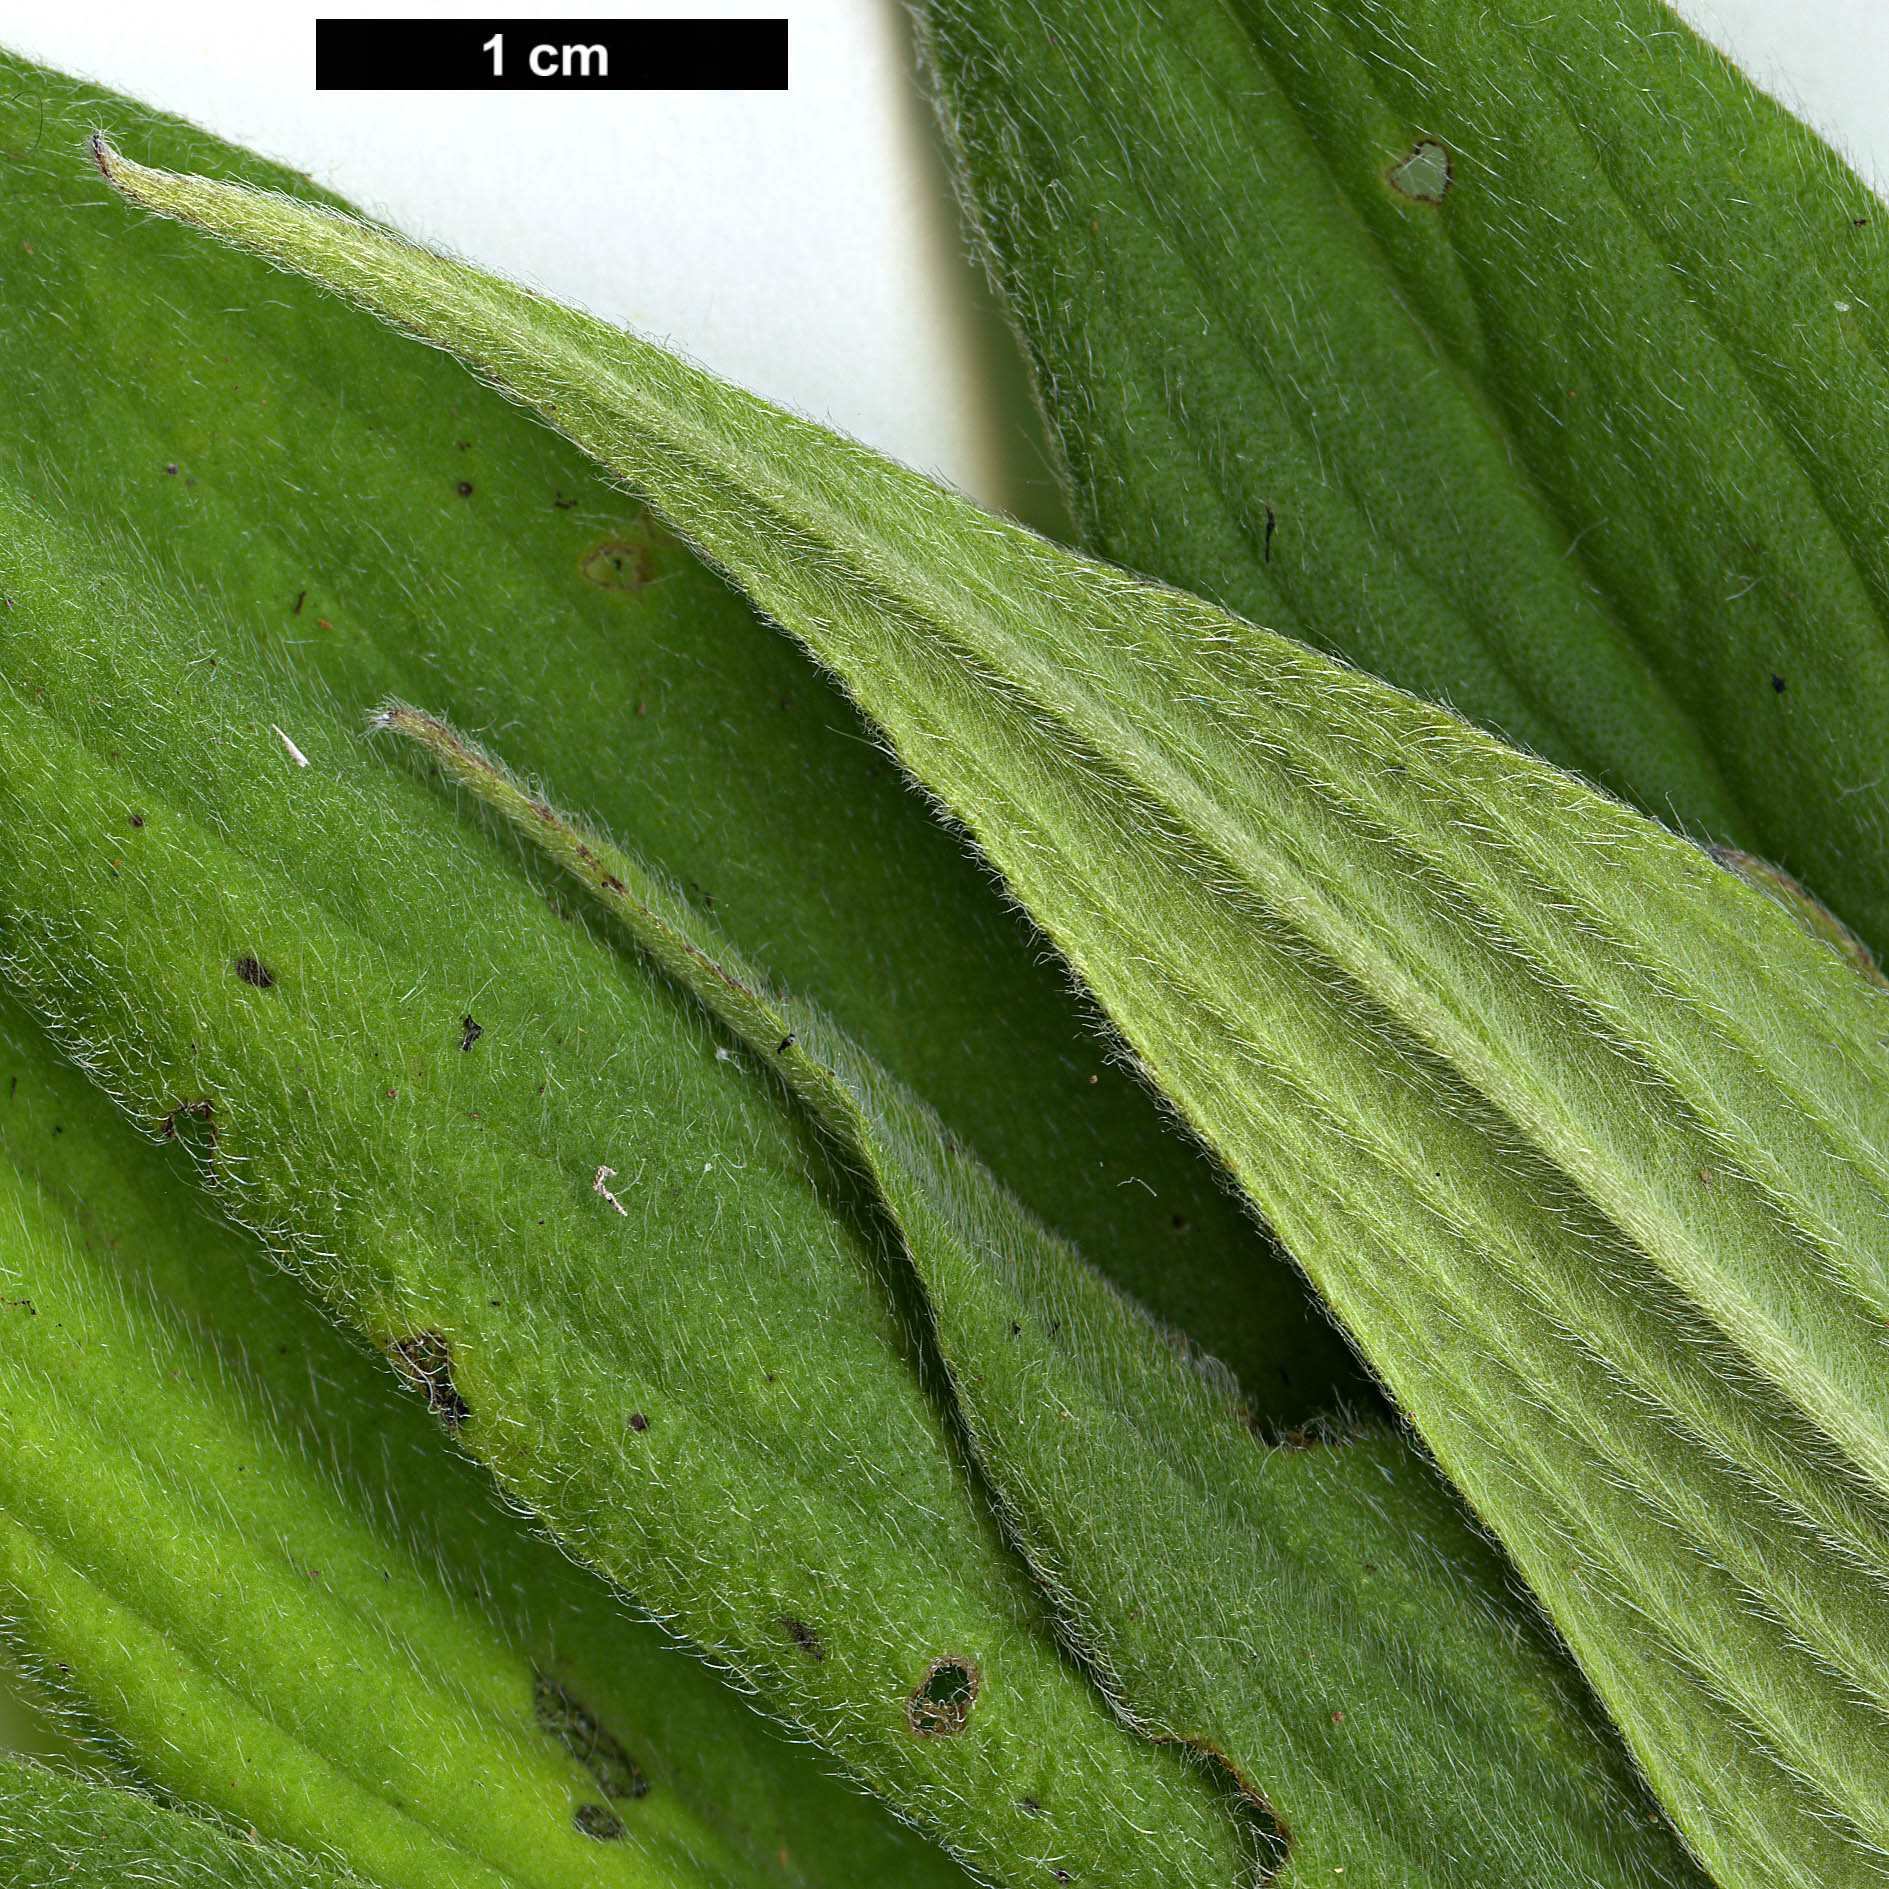 High resolution image: Family: Boraginaceae - Genus: Echium - Taxon: candicans